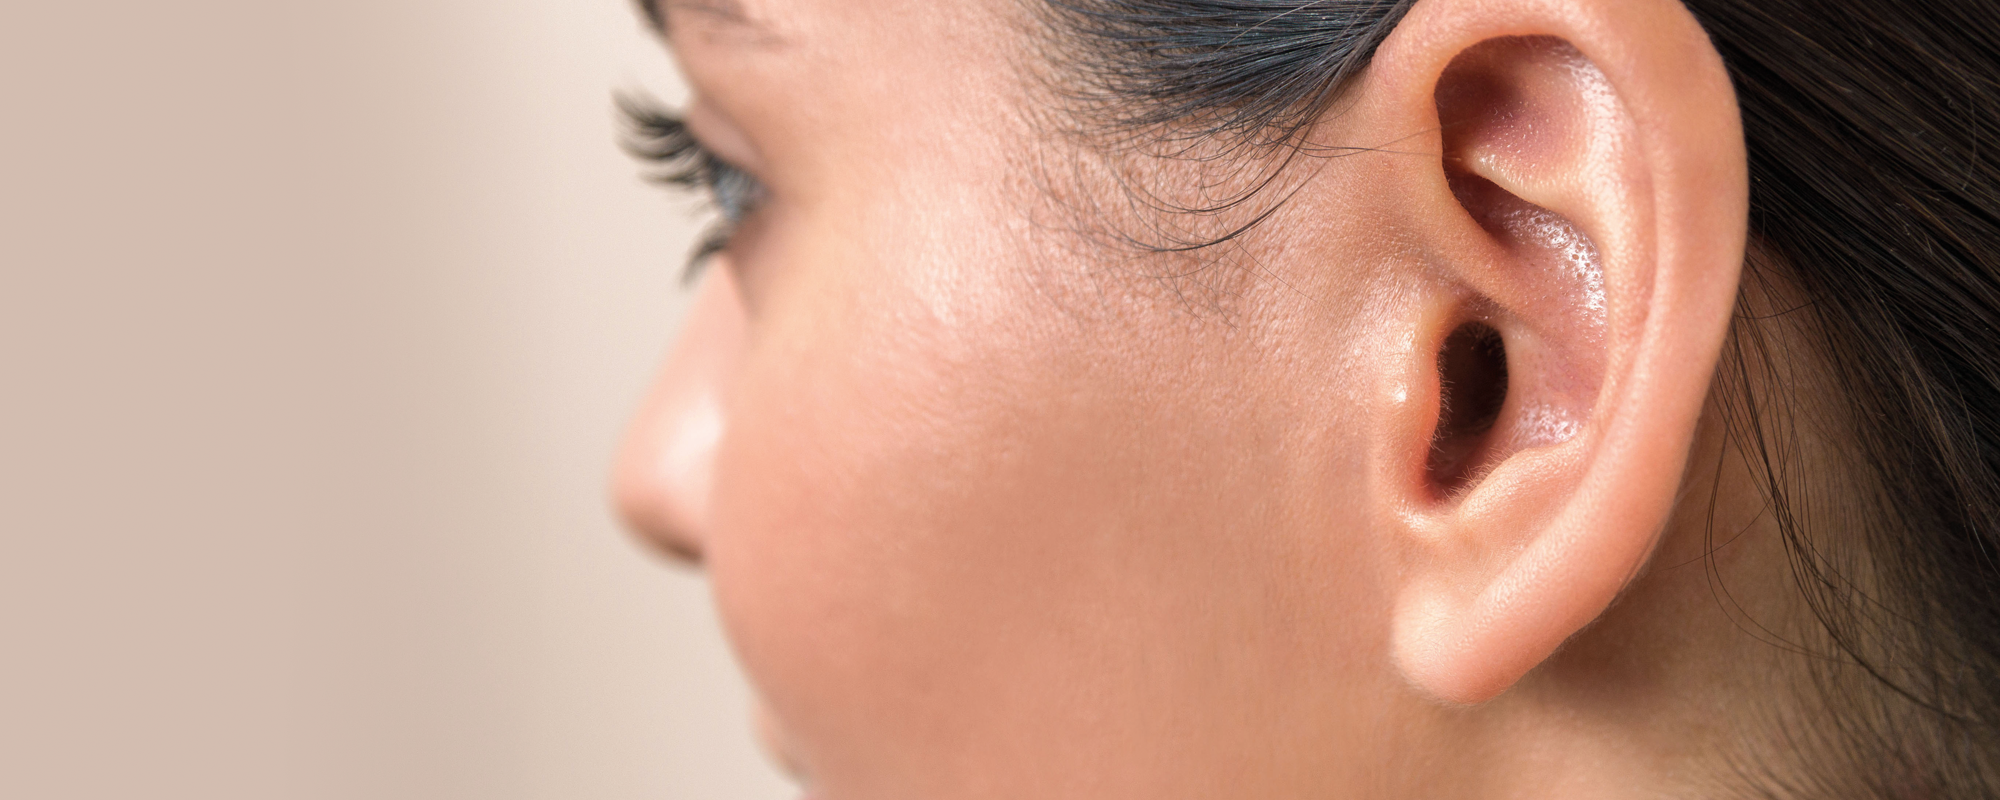 Ce que vous devez savoir sur le cerumen et comment nettoyer vos oreilles en toute securite 1